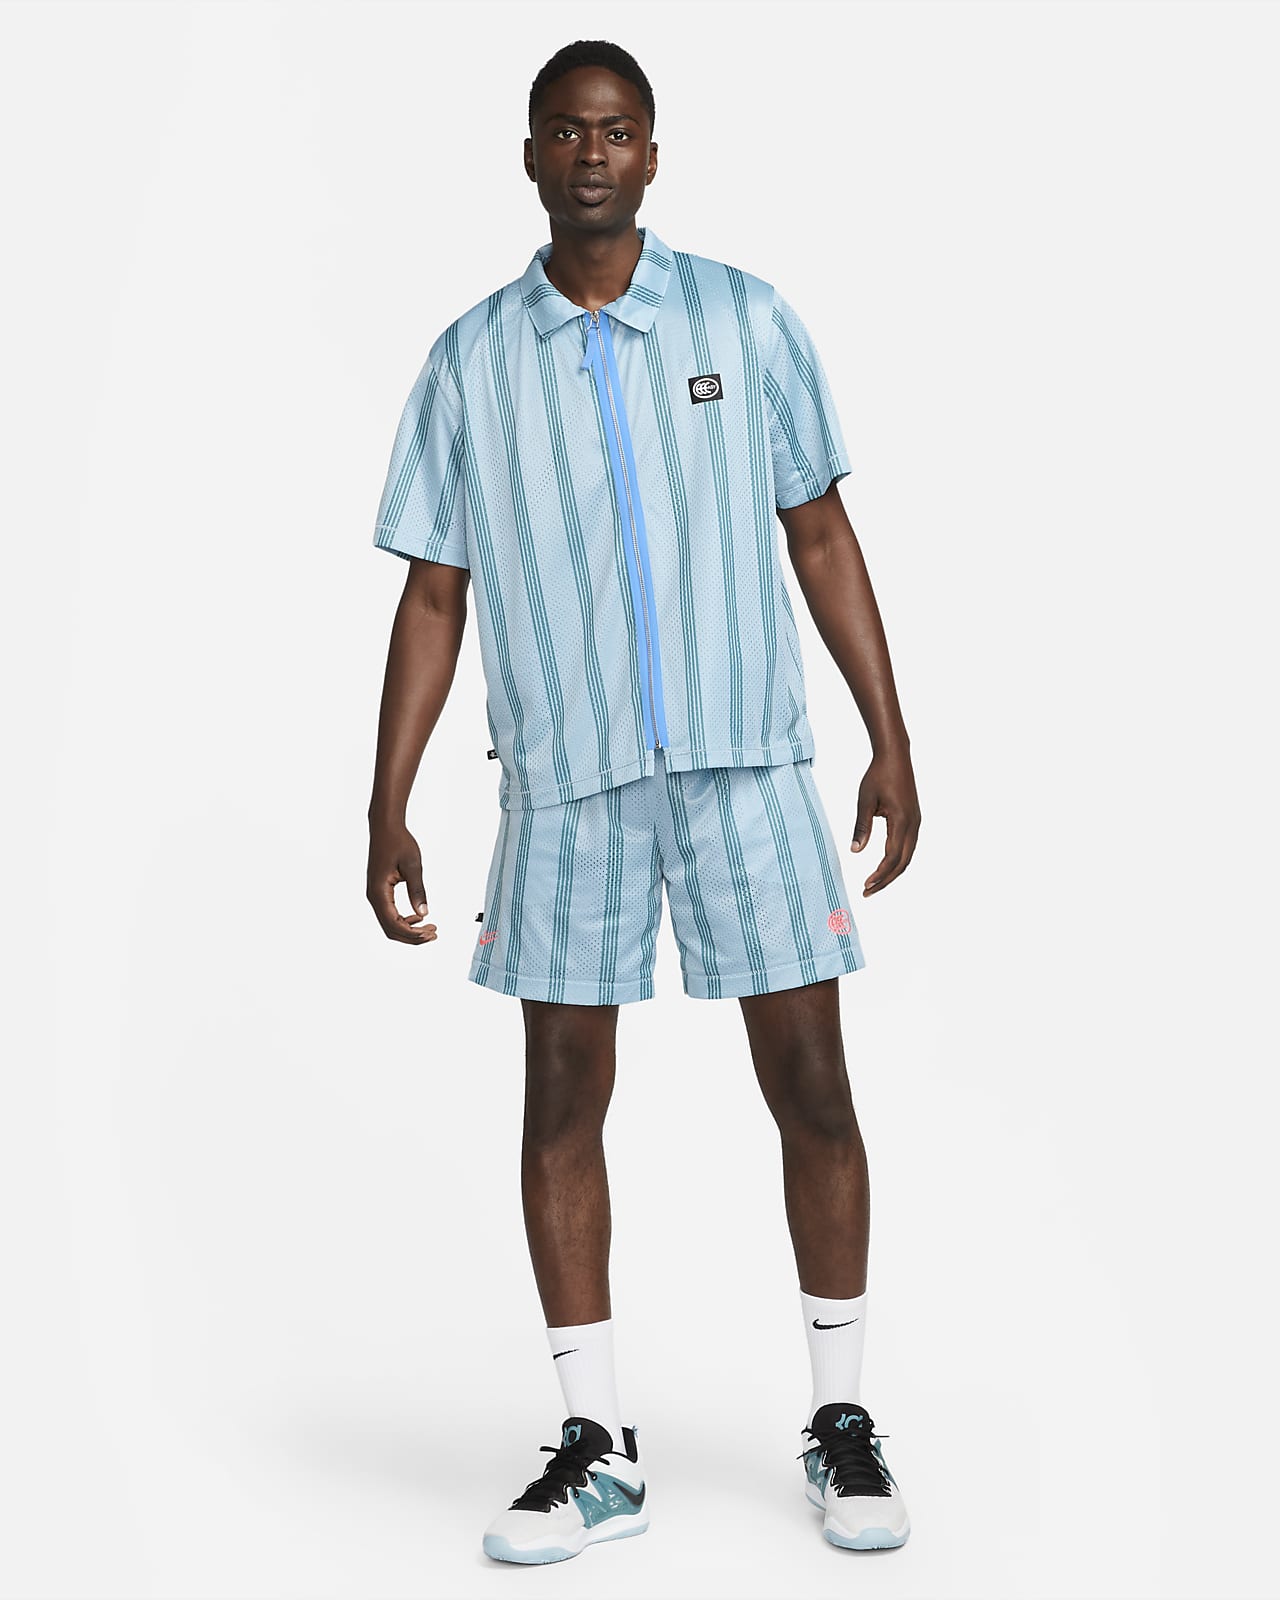 現貨特價) Nike NBA 布魯克林籃網Kevin Durant 22/23 城市版背號短T (Sz. M), 他的時尚, 運動服裝在旋轉拍賣